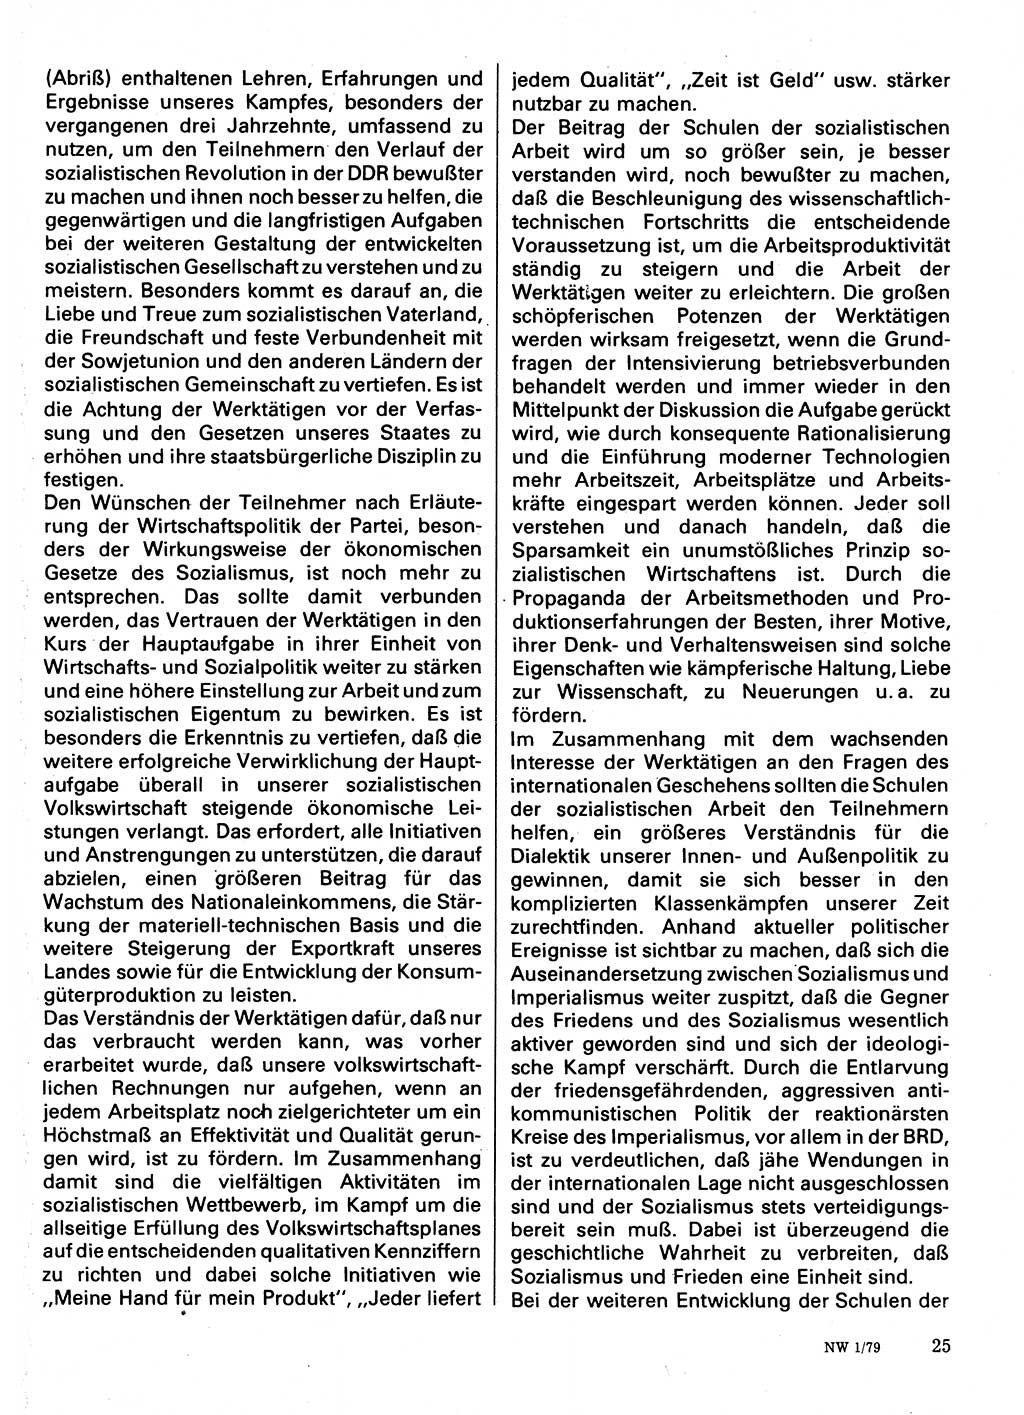 Neuer Weg (NW), Organ des Zentralkomitees (ZK) der SED (Sozialistische Einheitspartei Deutschlands) für Fragen des Parteilebens, 34. Jahrgang [Deutsche Demokratische Republik (DDR)] 1979, Seite 25 (NW ZK SED DDR 1979, S. 25)